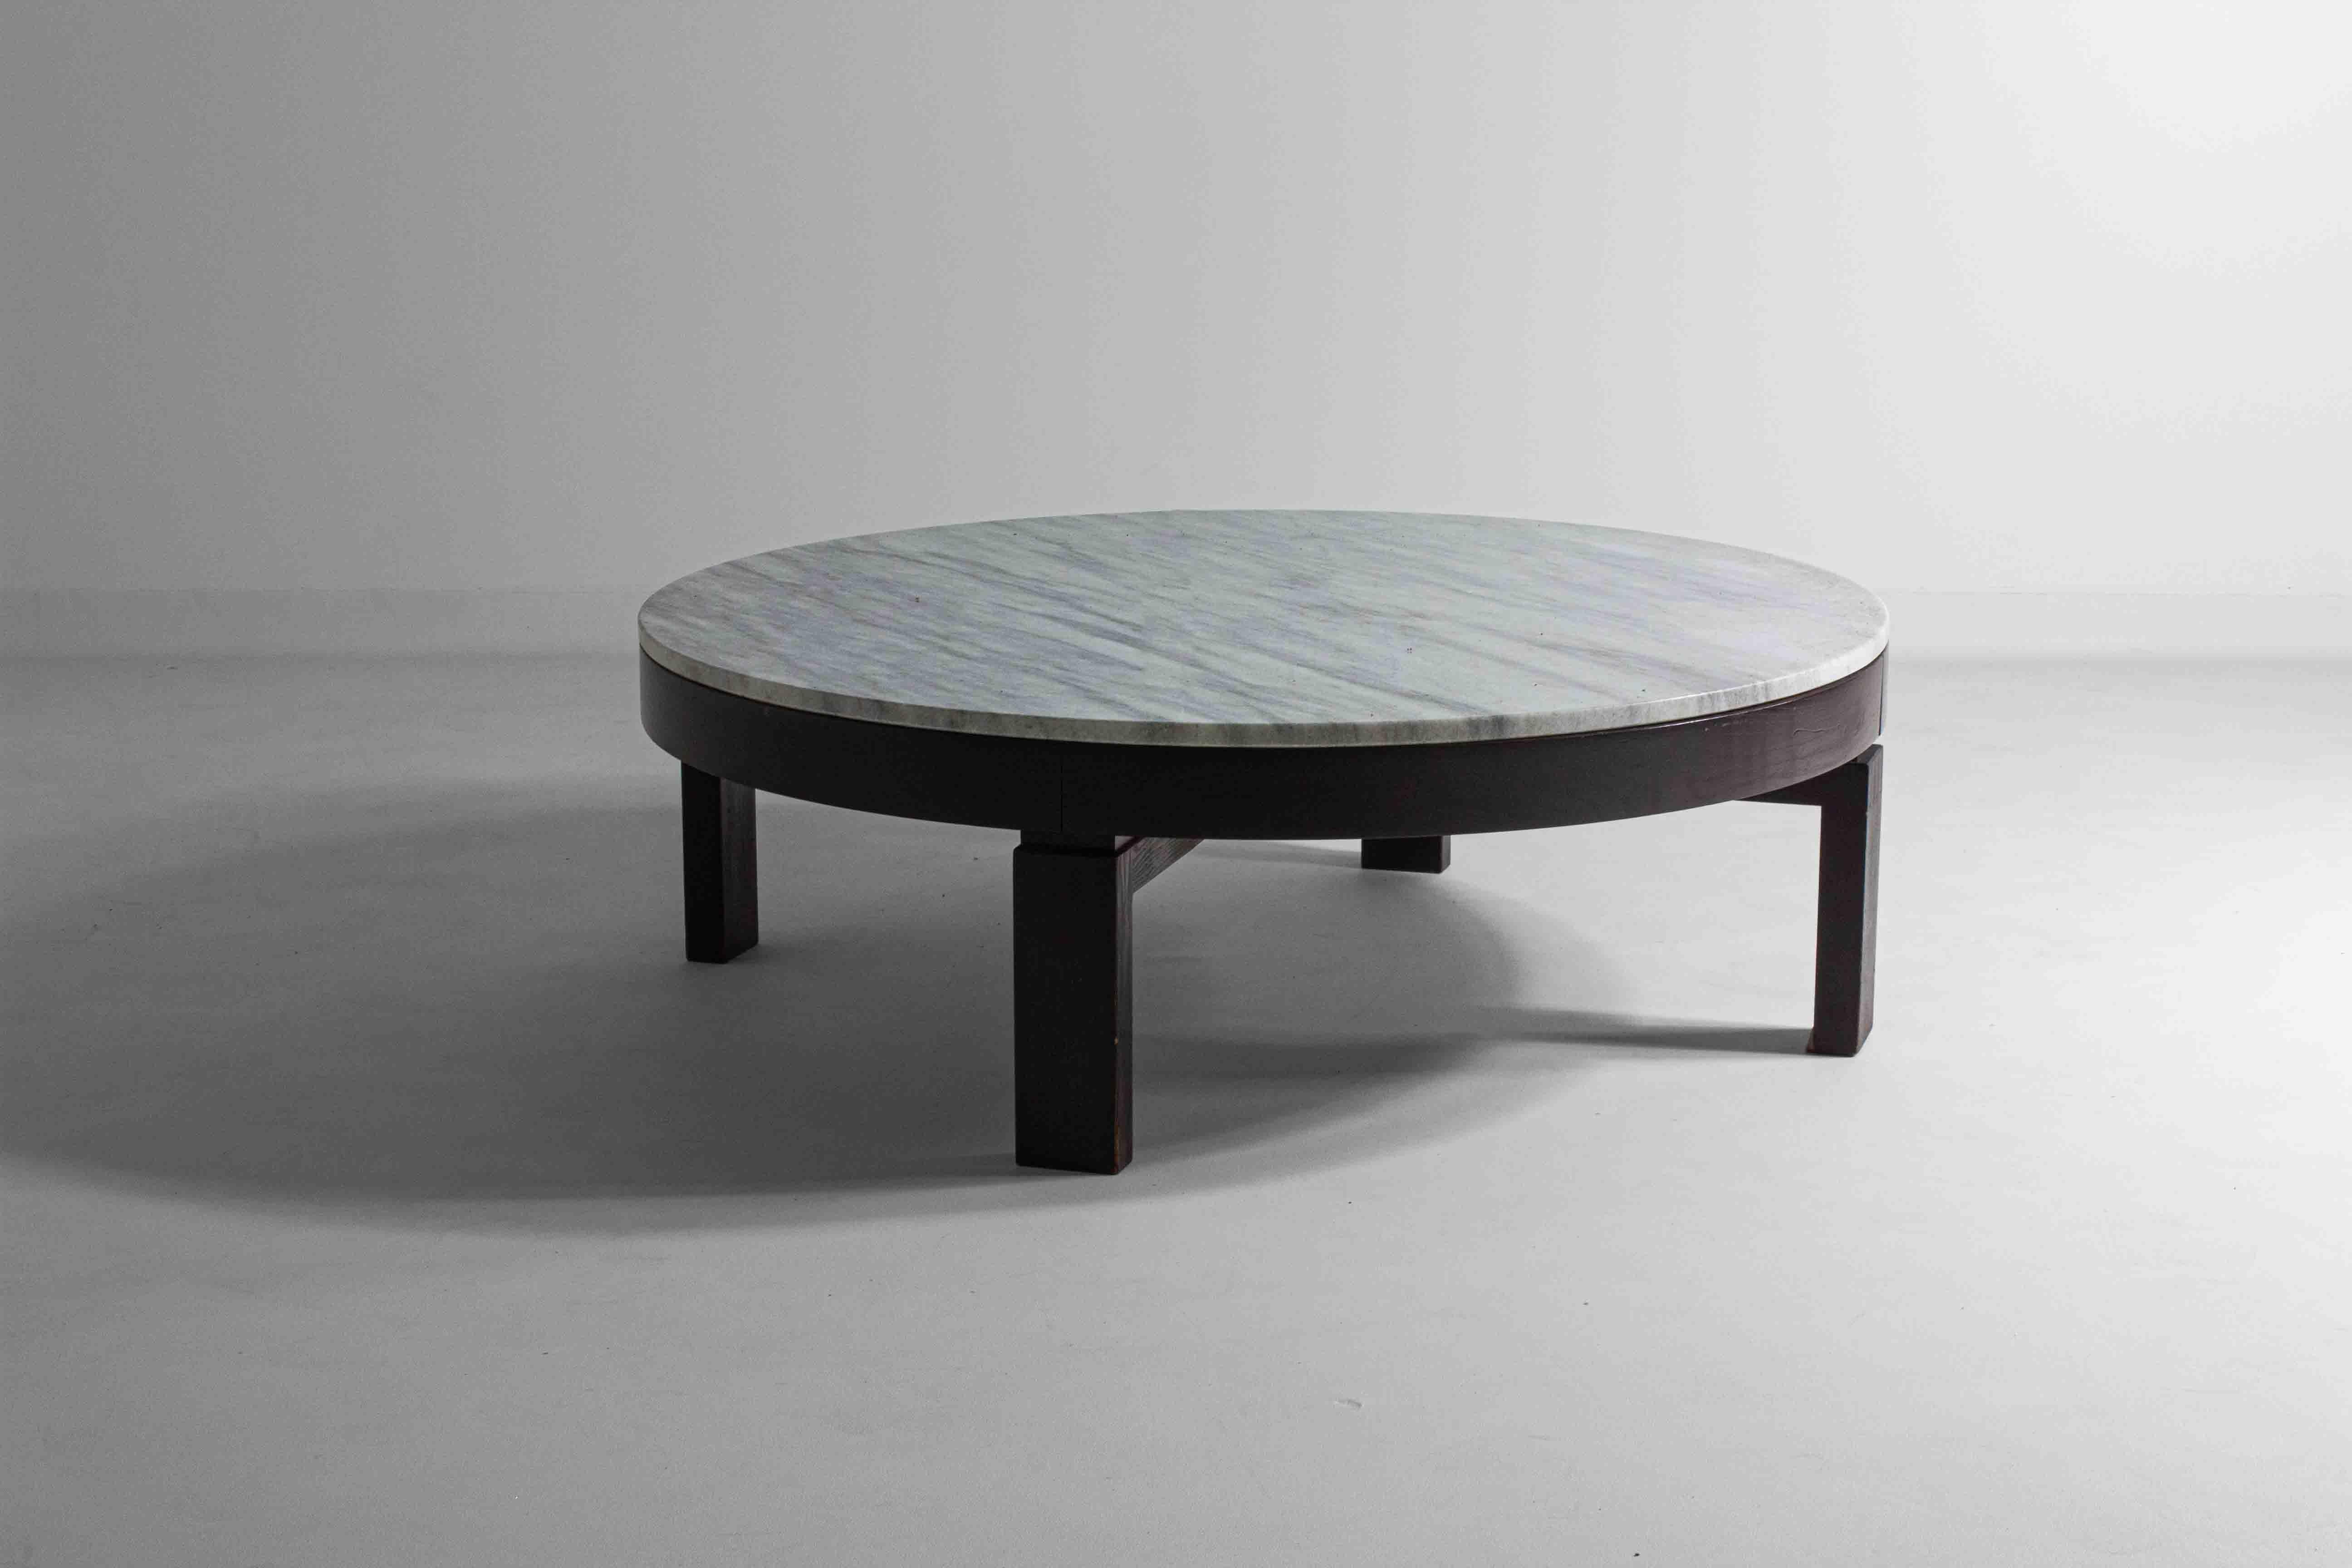 Diese prächtige runde Tischplatte wird von einem robusten dunklen Holzrahmen getragen, dessen tiefe Töne einen prächtigen Kontrast zum weißen Marmor bilden und ein Gefühl von klassischer Grandeur hervorrufen, das ein Synonym für das Design der